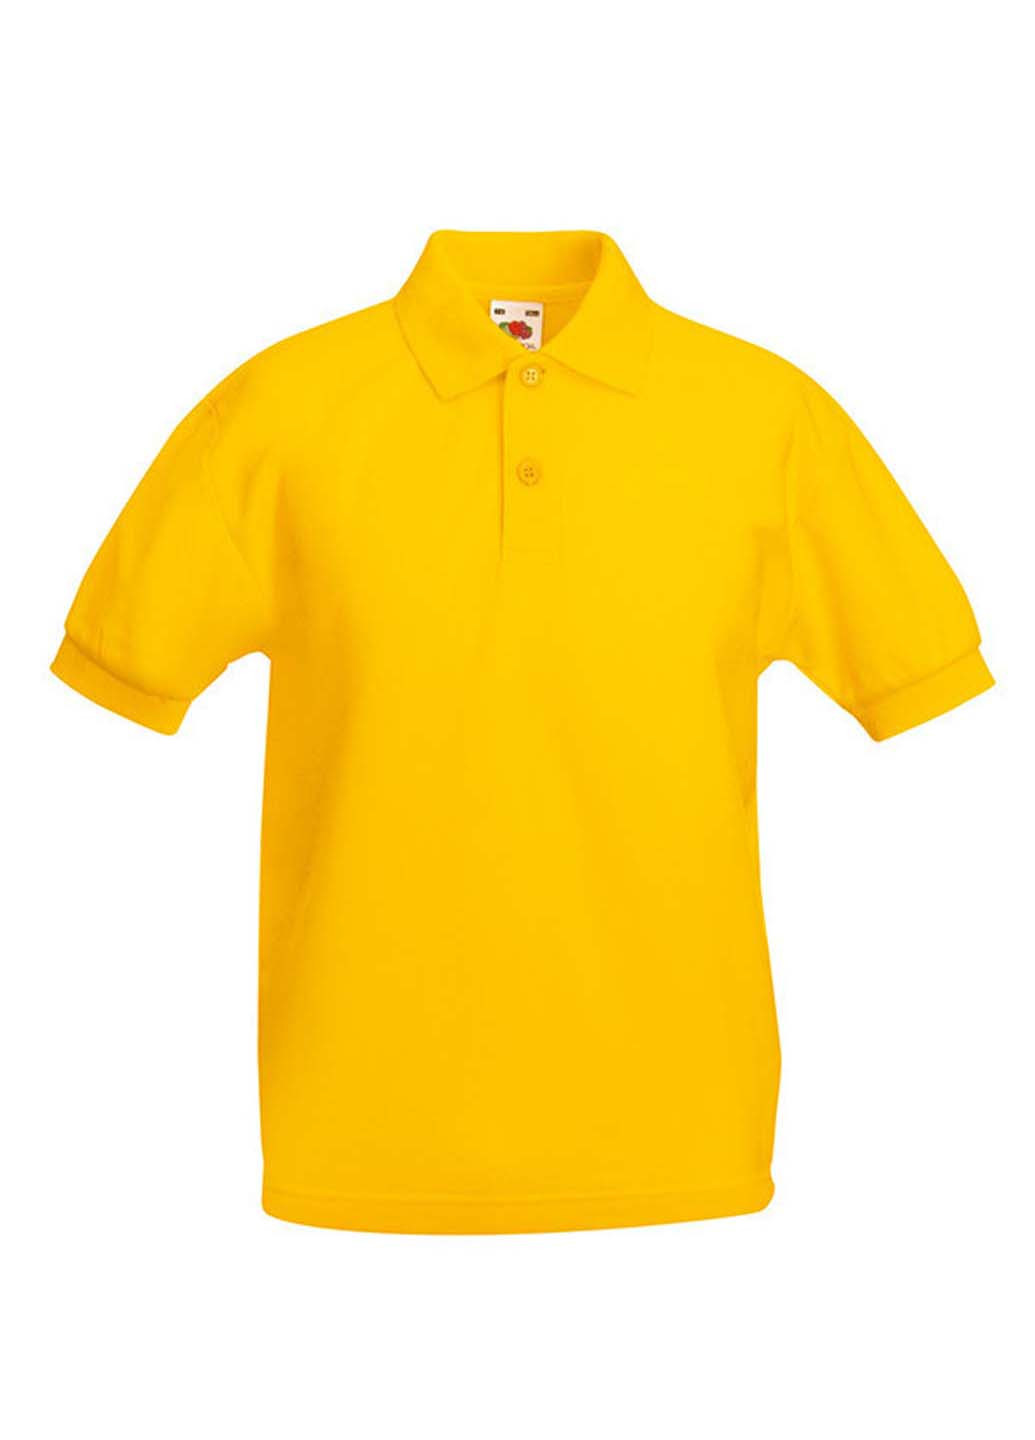 Желтая детская футболка-поло для мальчика Fruit of the Loom